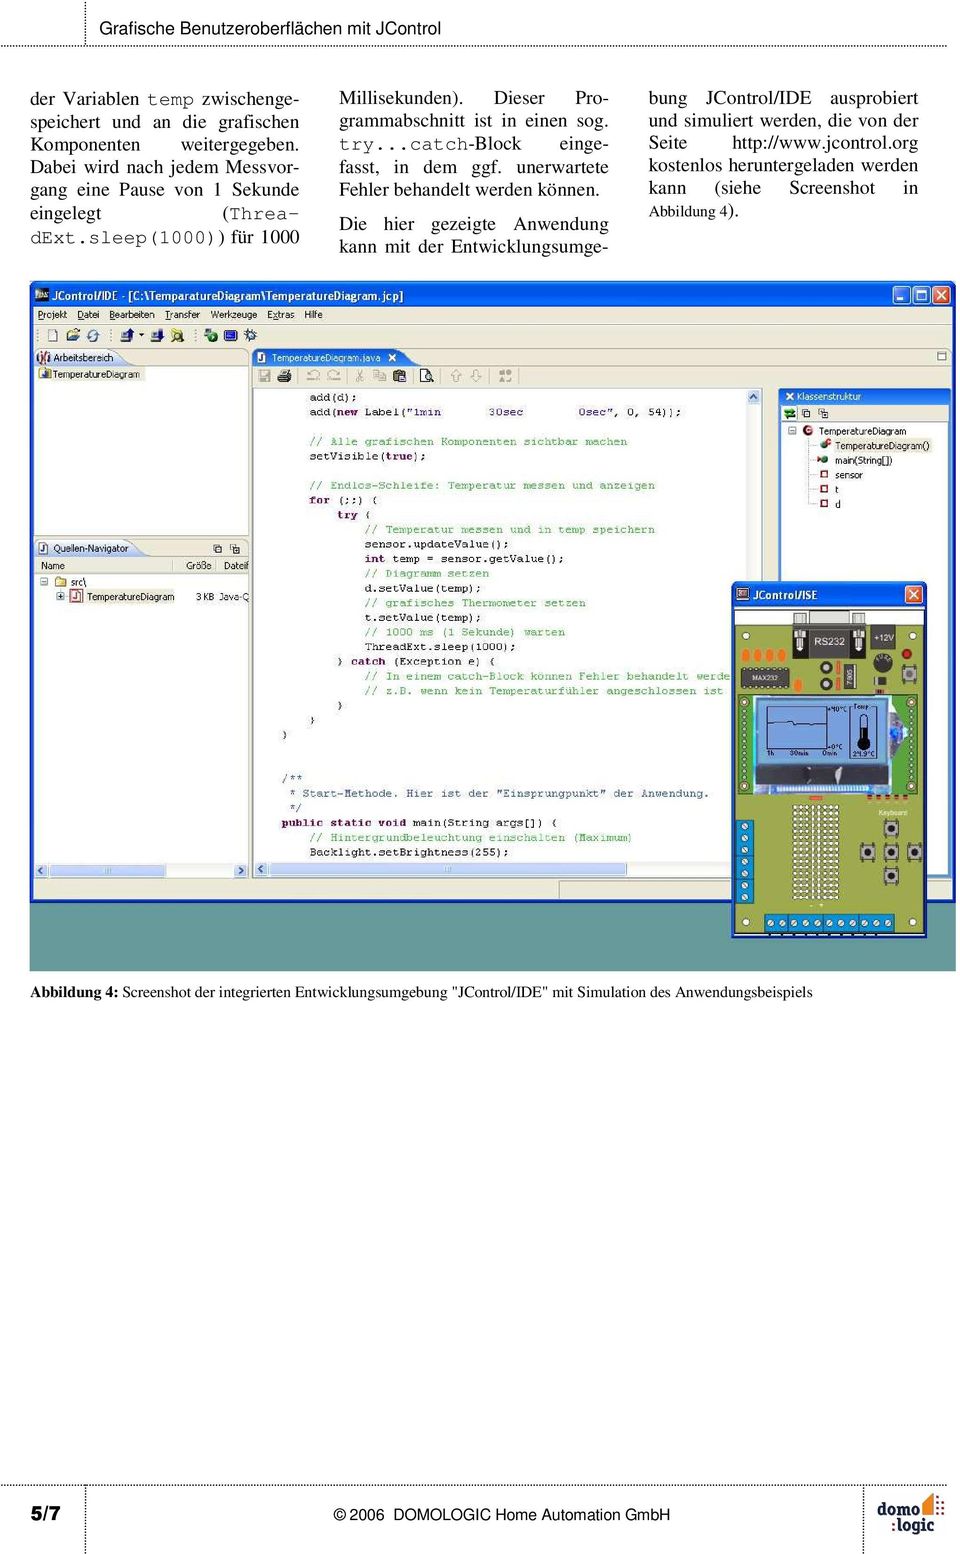 Die hier gezeigte Anwendung kann mit der Entwicklungsumgebung JControl/IDE ausprobiert und simuliert werden, die von der Seite http://www.jcontrol.